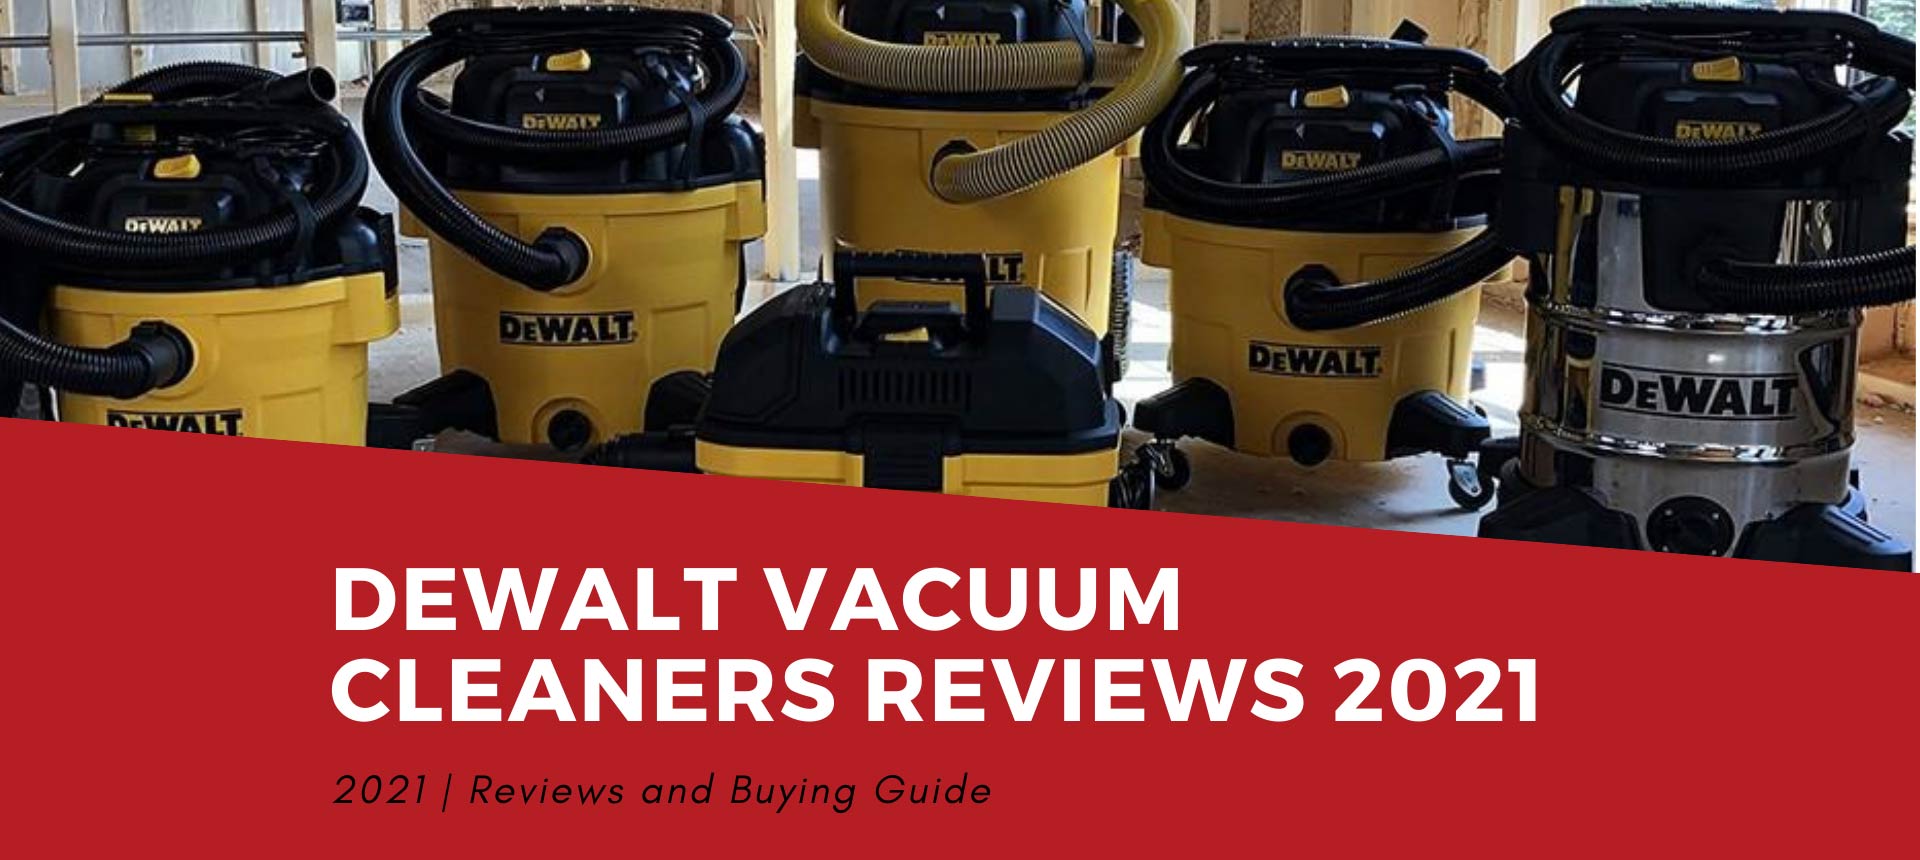 DEWALT Vacuum Cleaners Reviews 2021